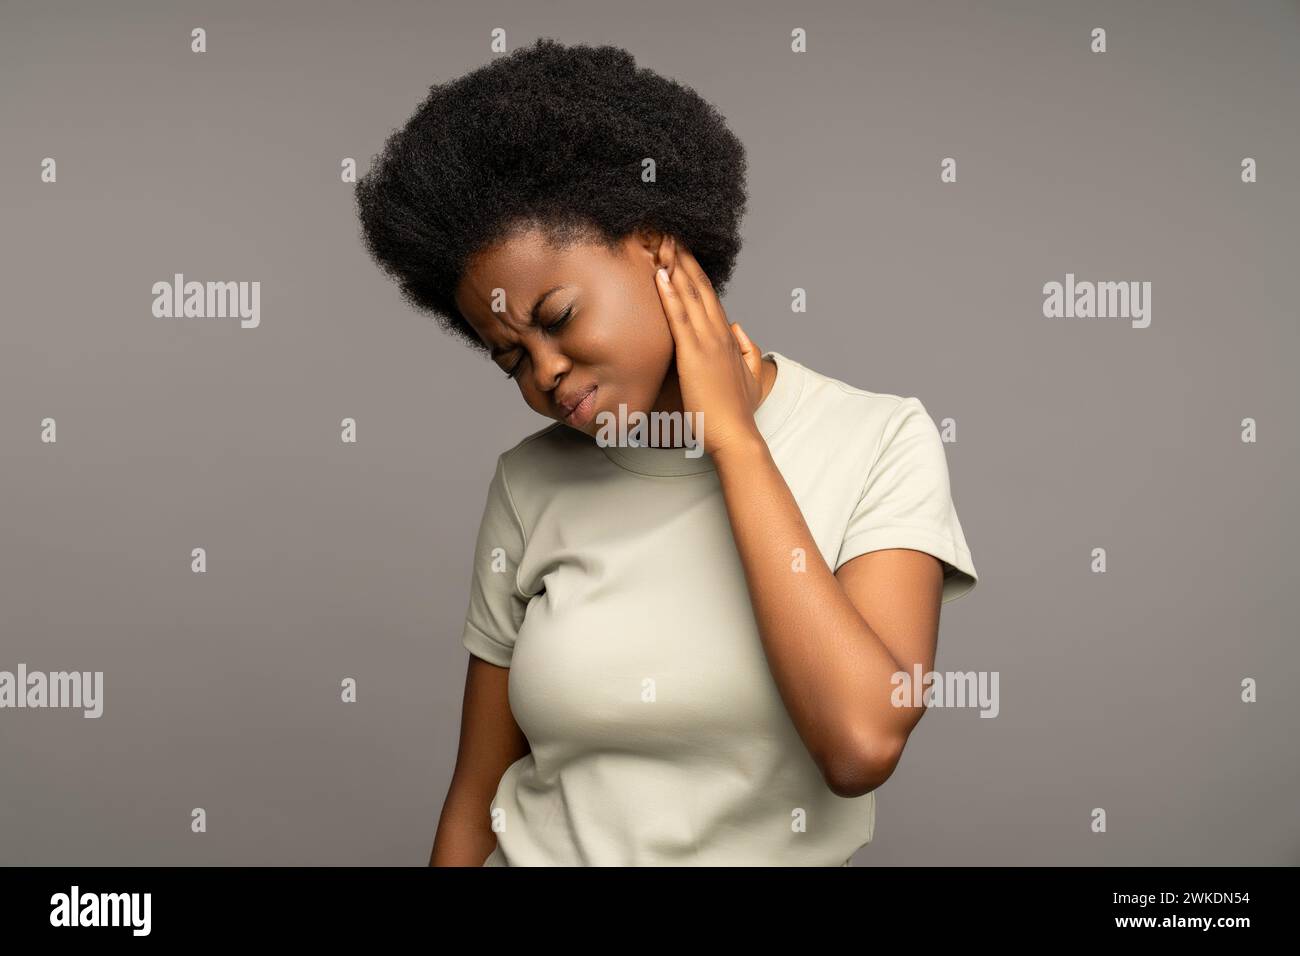 Femme noire touchant l'oreille douloureuse, présentant des symptômes d'otite, nécessitant un traitement oto-rhino-laryngologiste Banque D'Images